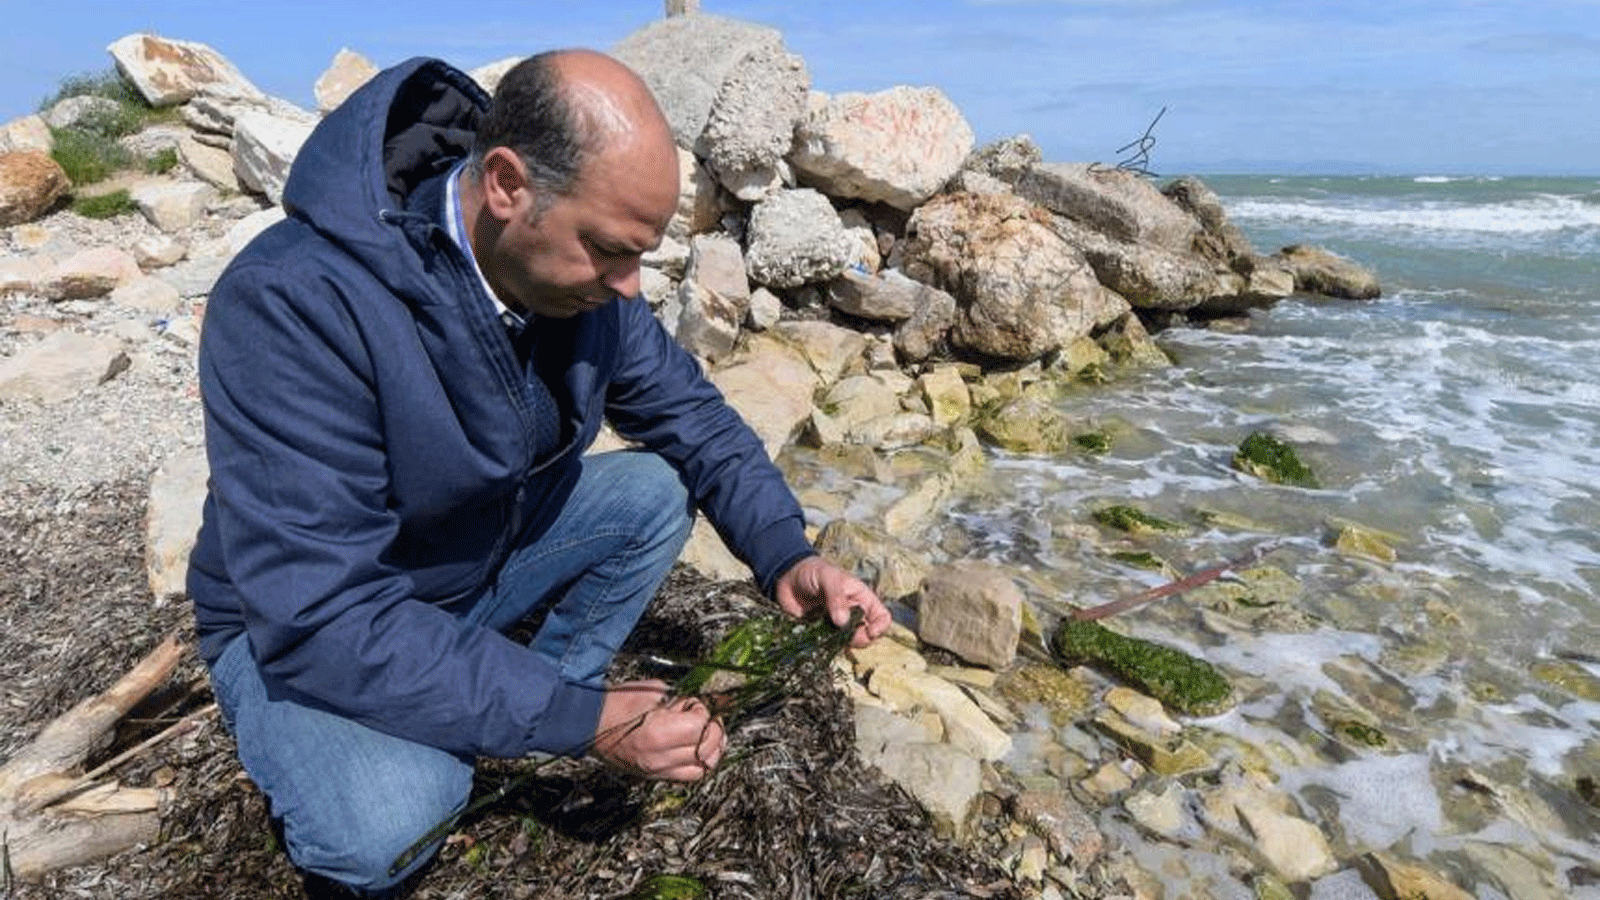 عالم الأحياء البحرية ياسين رمزي الصغير يتفقد نبتة بحرية من جنس Posidonia في تونس العاصمة في 14 آذار\مارس 2022